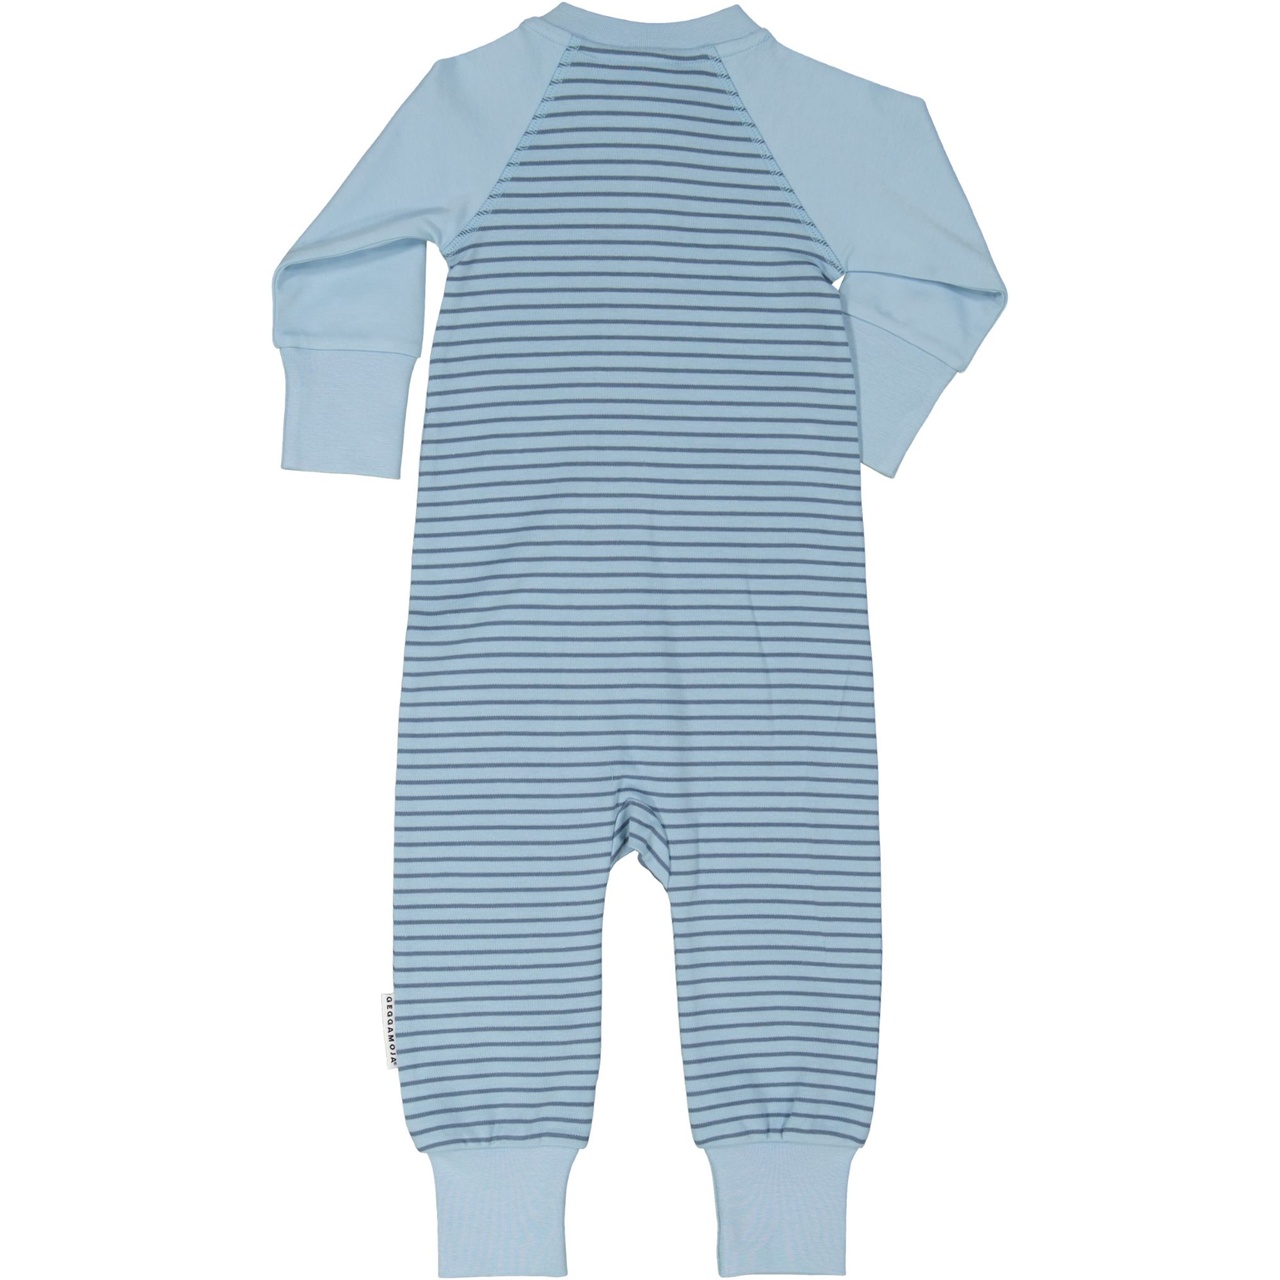 Pyjamas L.blue/blue50/56